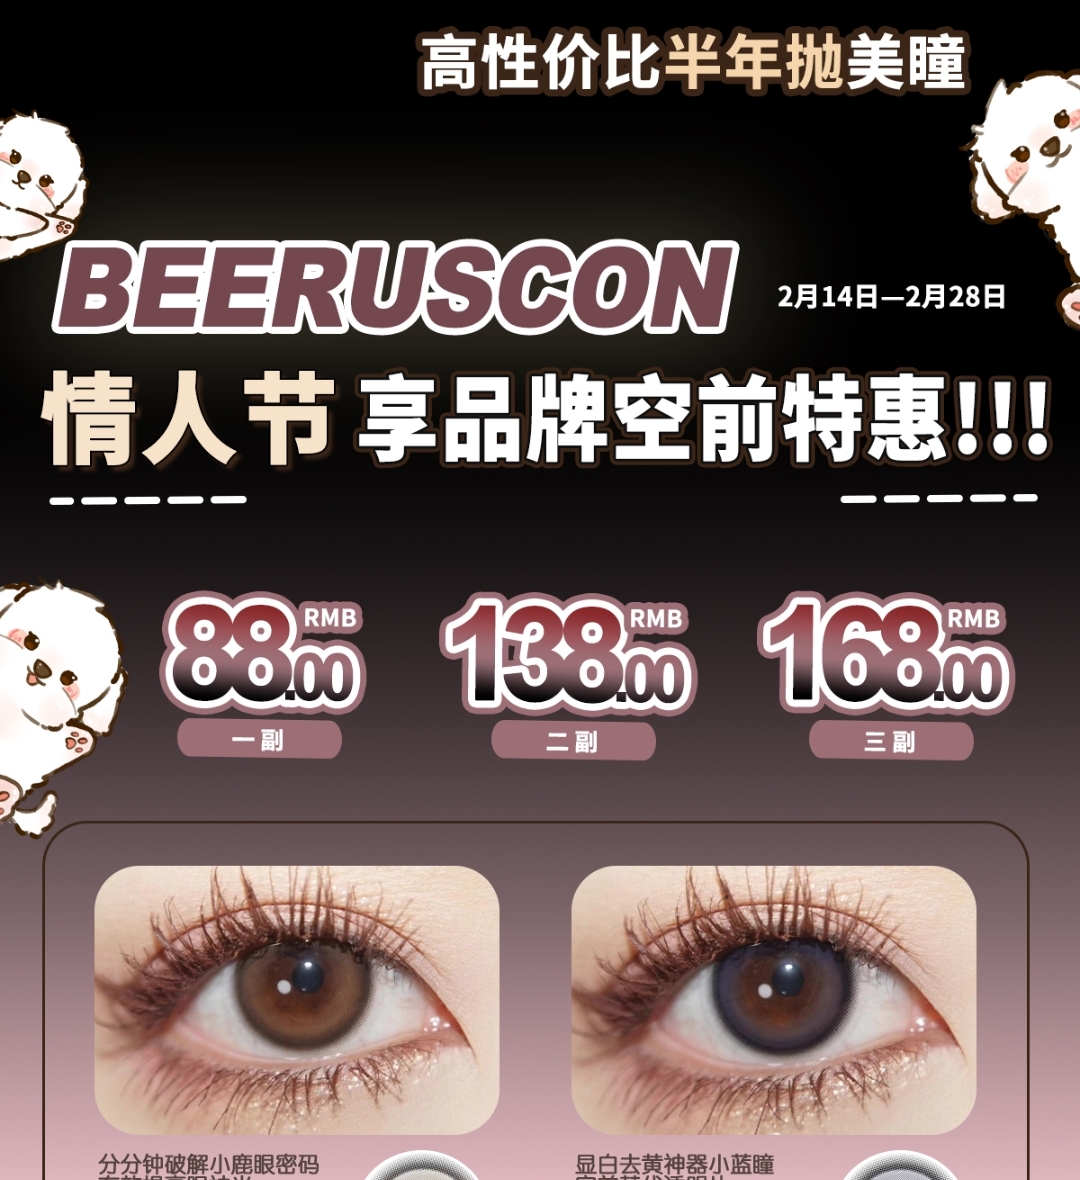 【半年抛】Beeruscon 2.14 情人节 享品牌空前特惠